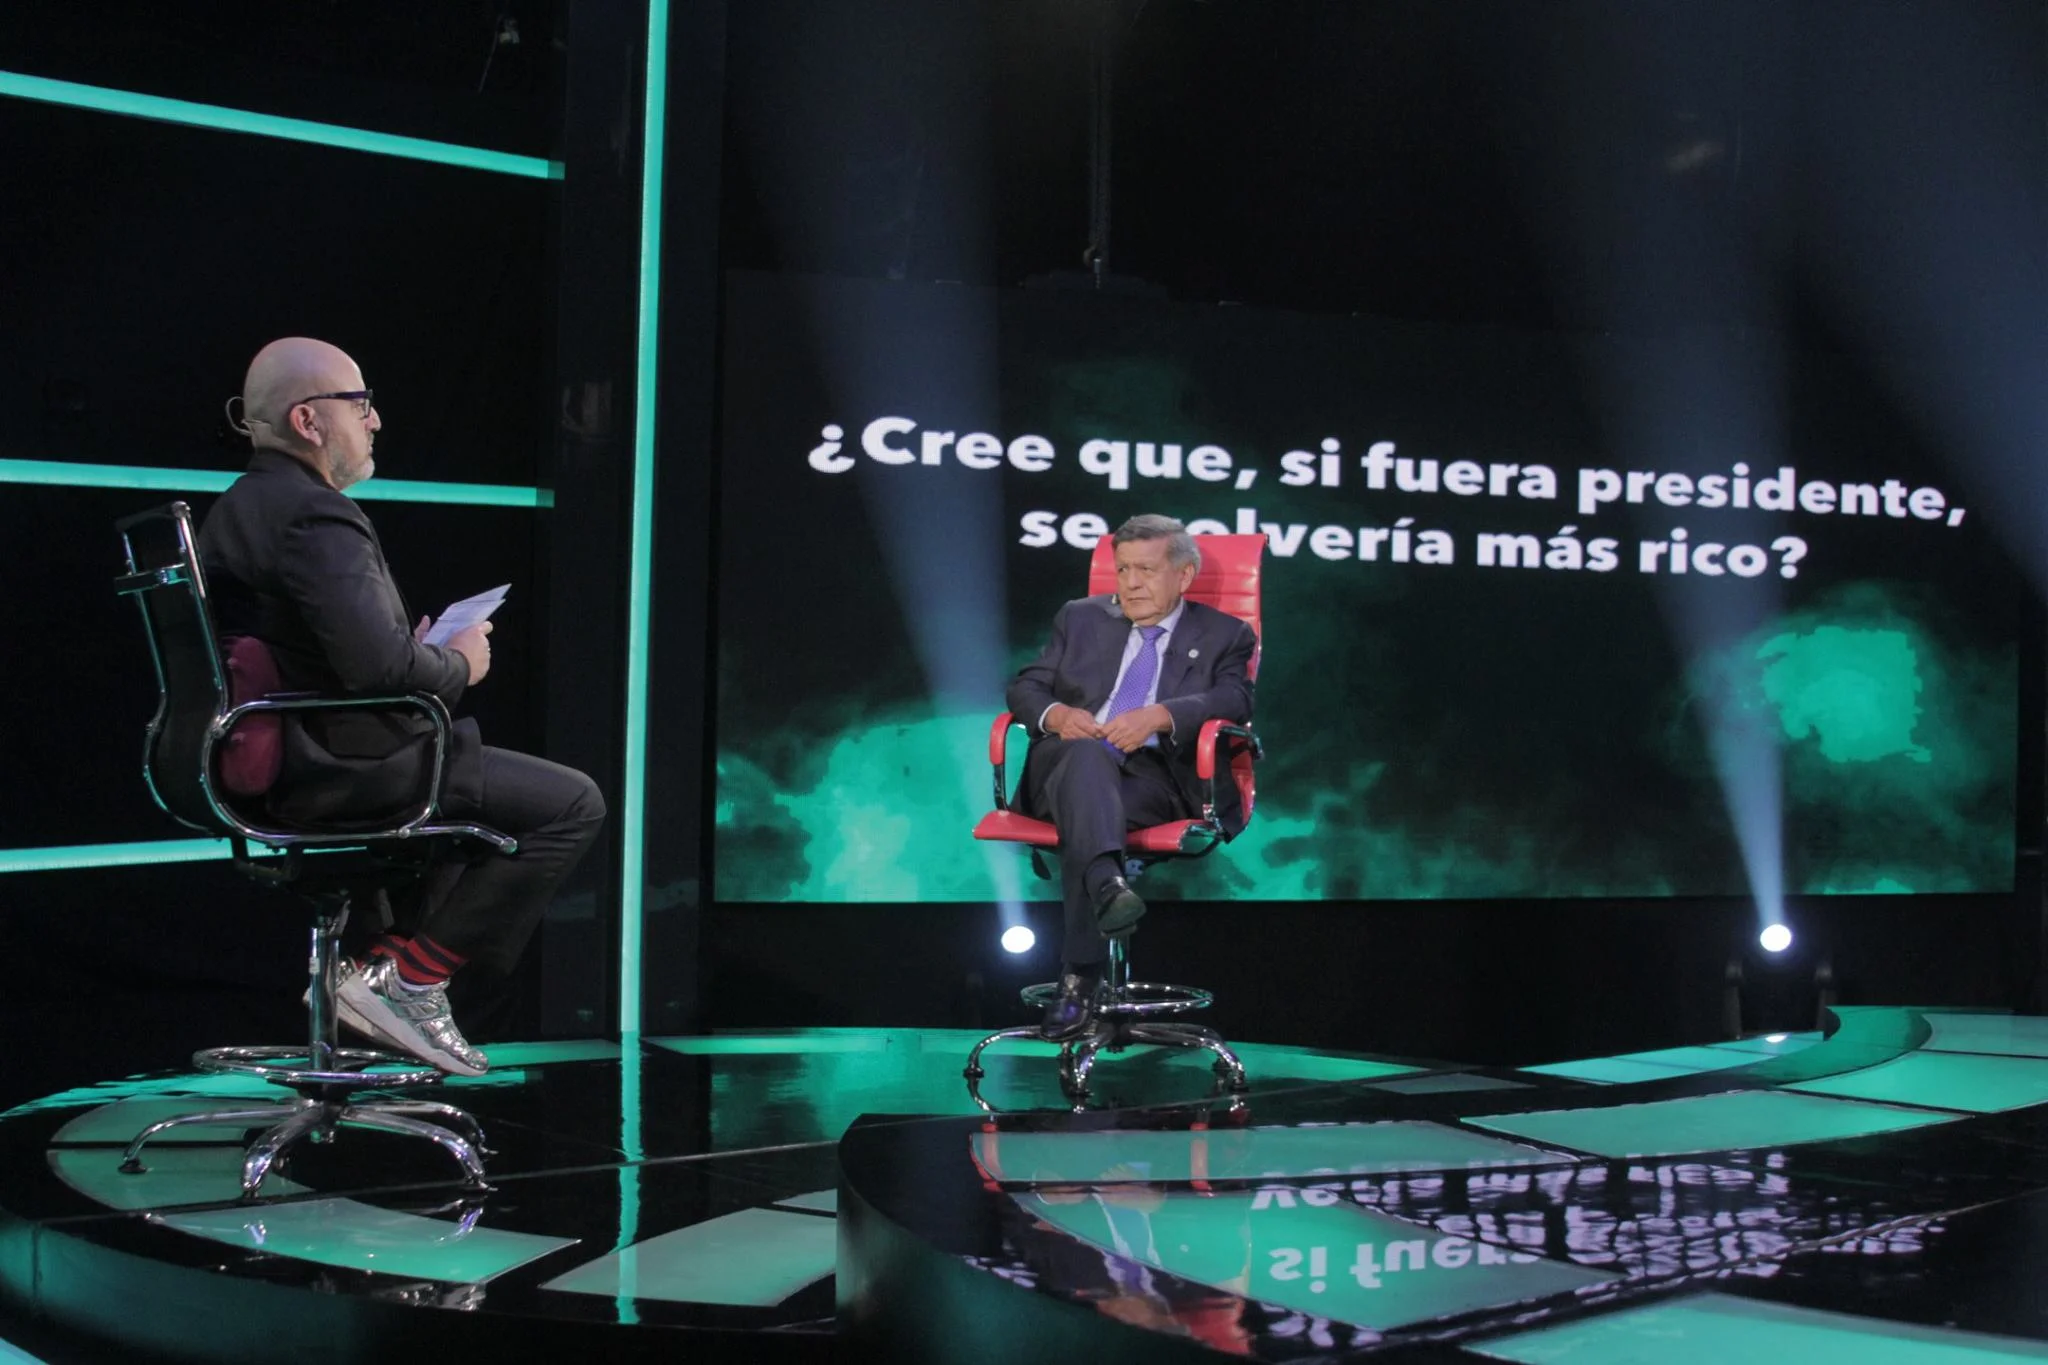 César Acuña confiesa que será más rico si es presidente